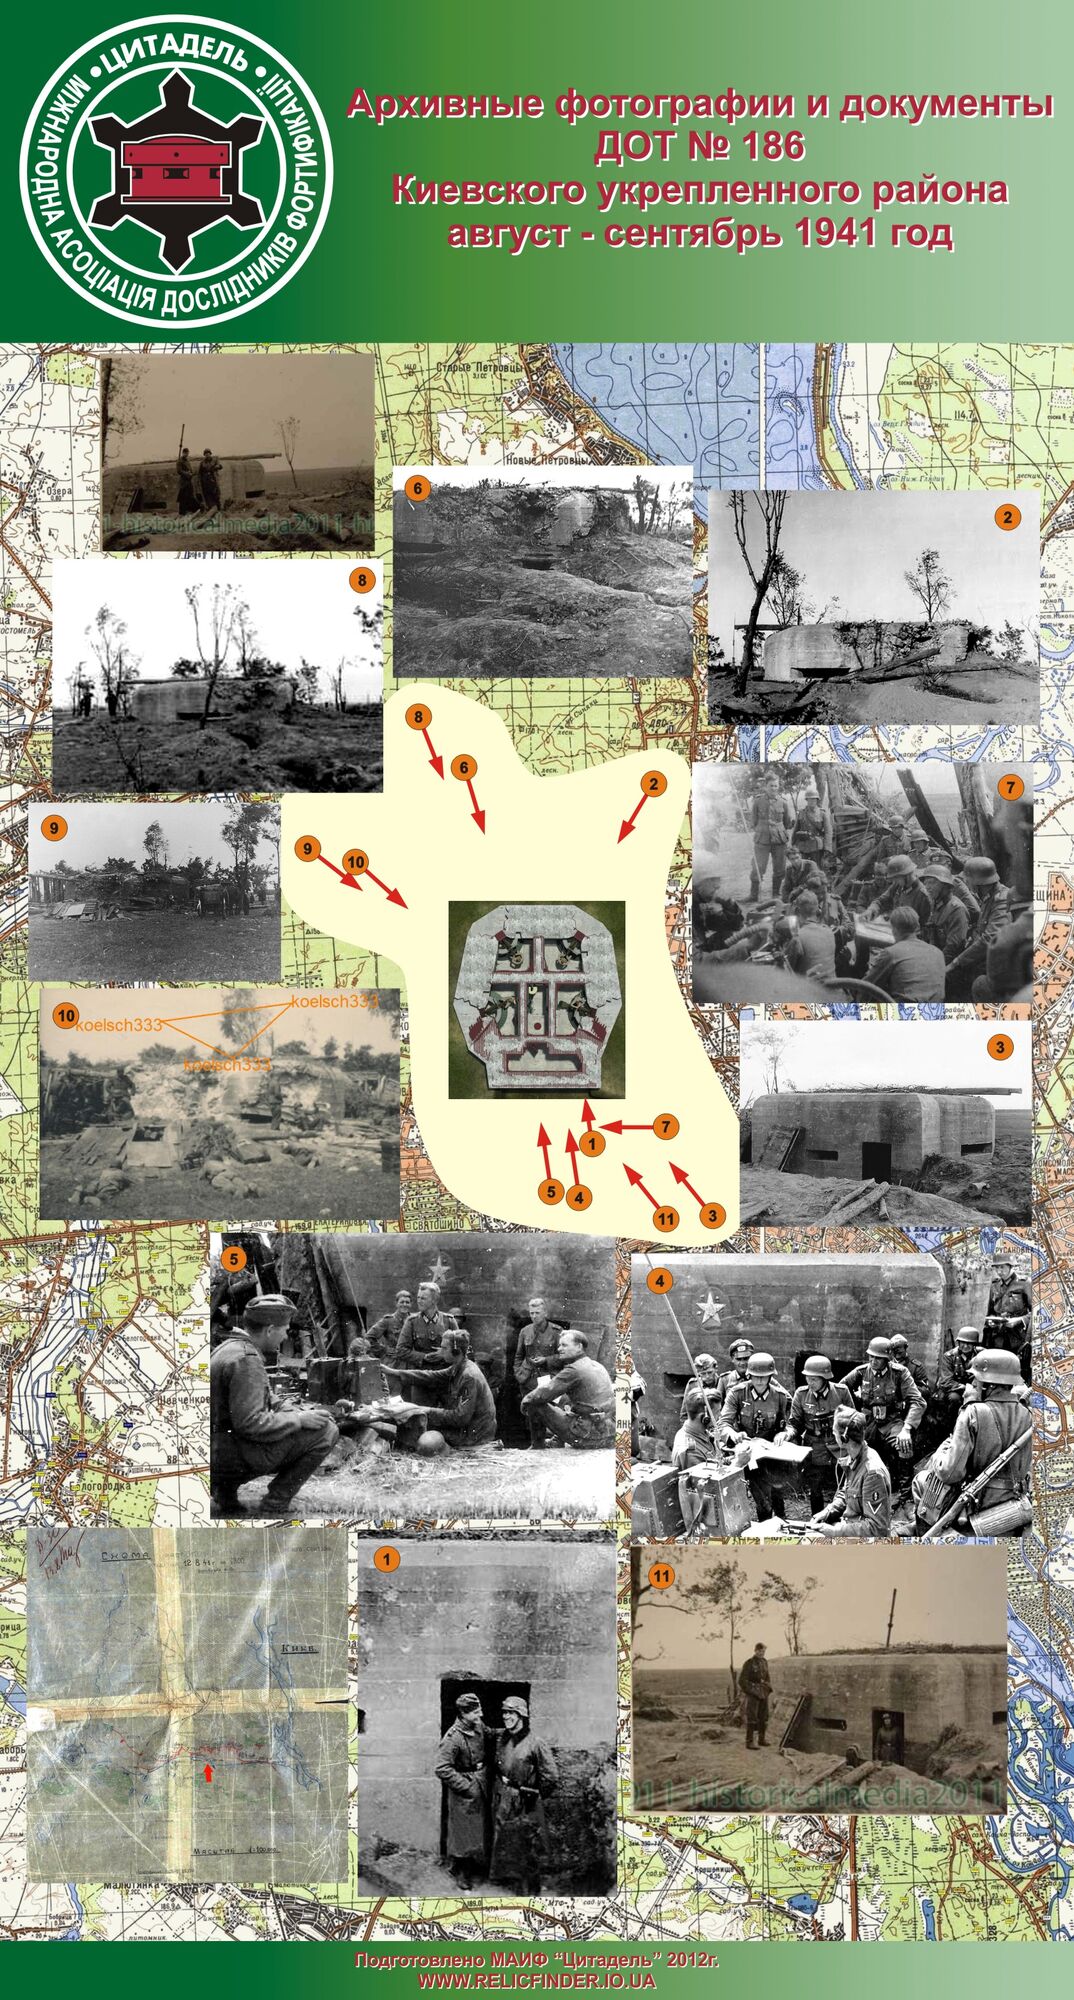 Схема фотосьемки из найденных архивных фото ДОТ 186. Долгая, кропотливая исследовательская работа